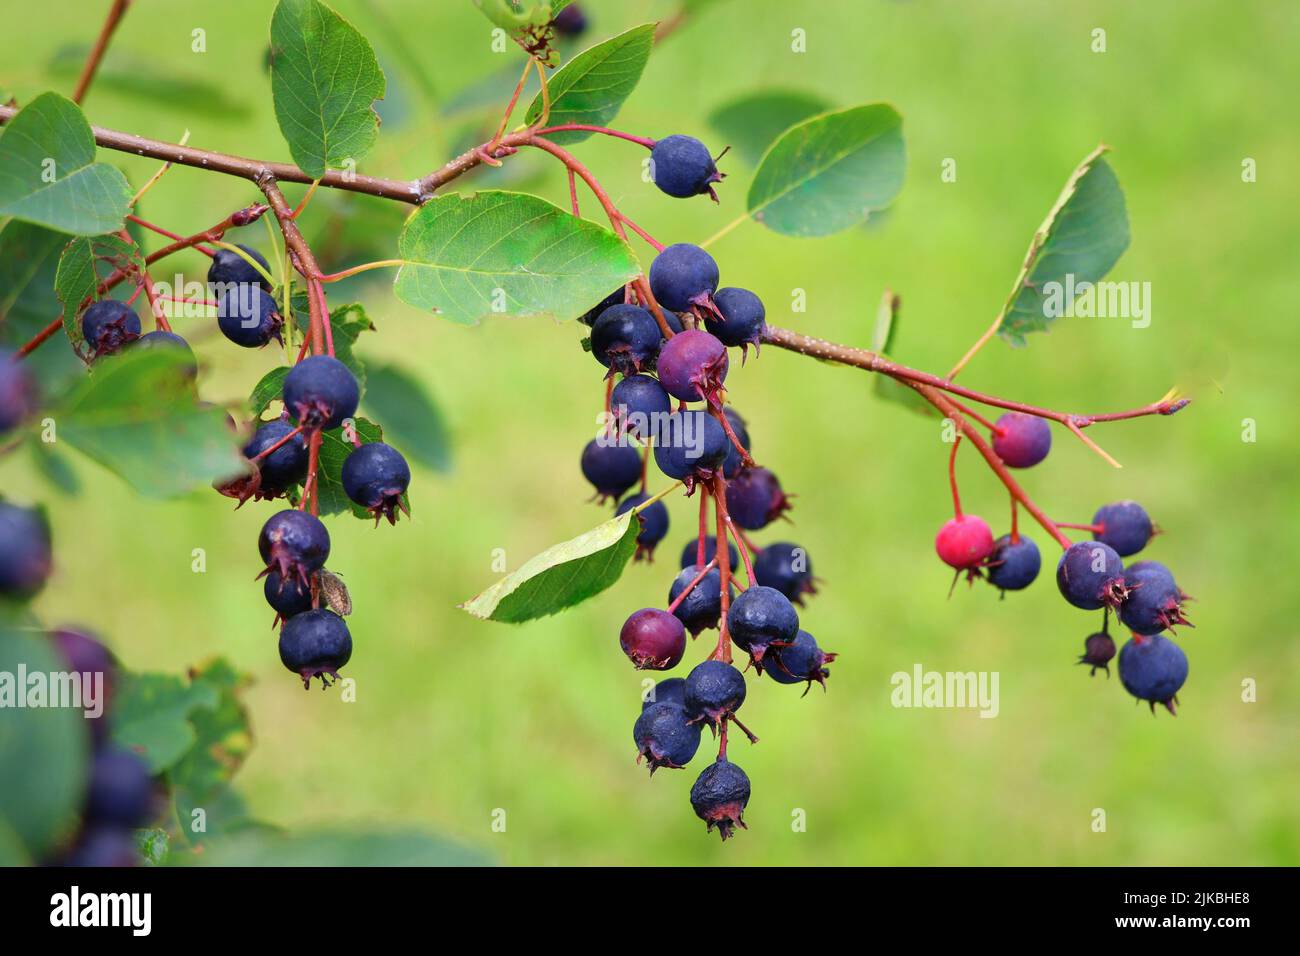 Saskatoon berry ou Amelanhier , un genre de plantes de la famille des Pink, Rosaceae, arbuste à feuilles caduques. Pinceau de baies sur un fond de feuilles Banque D'Images